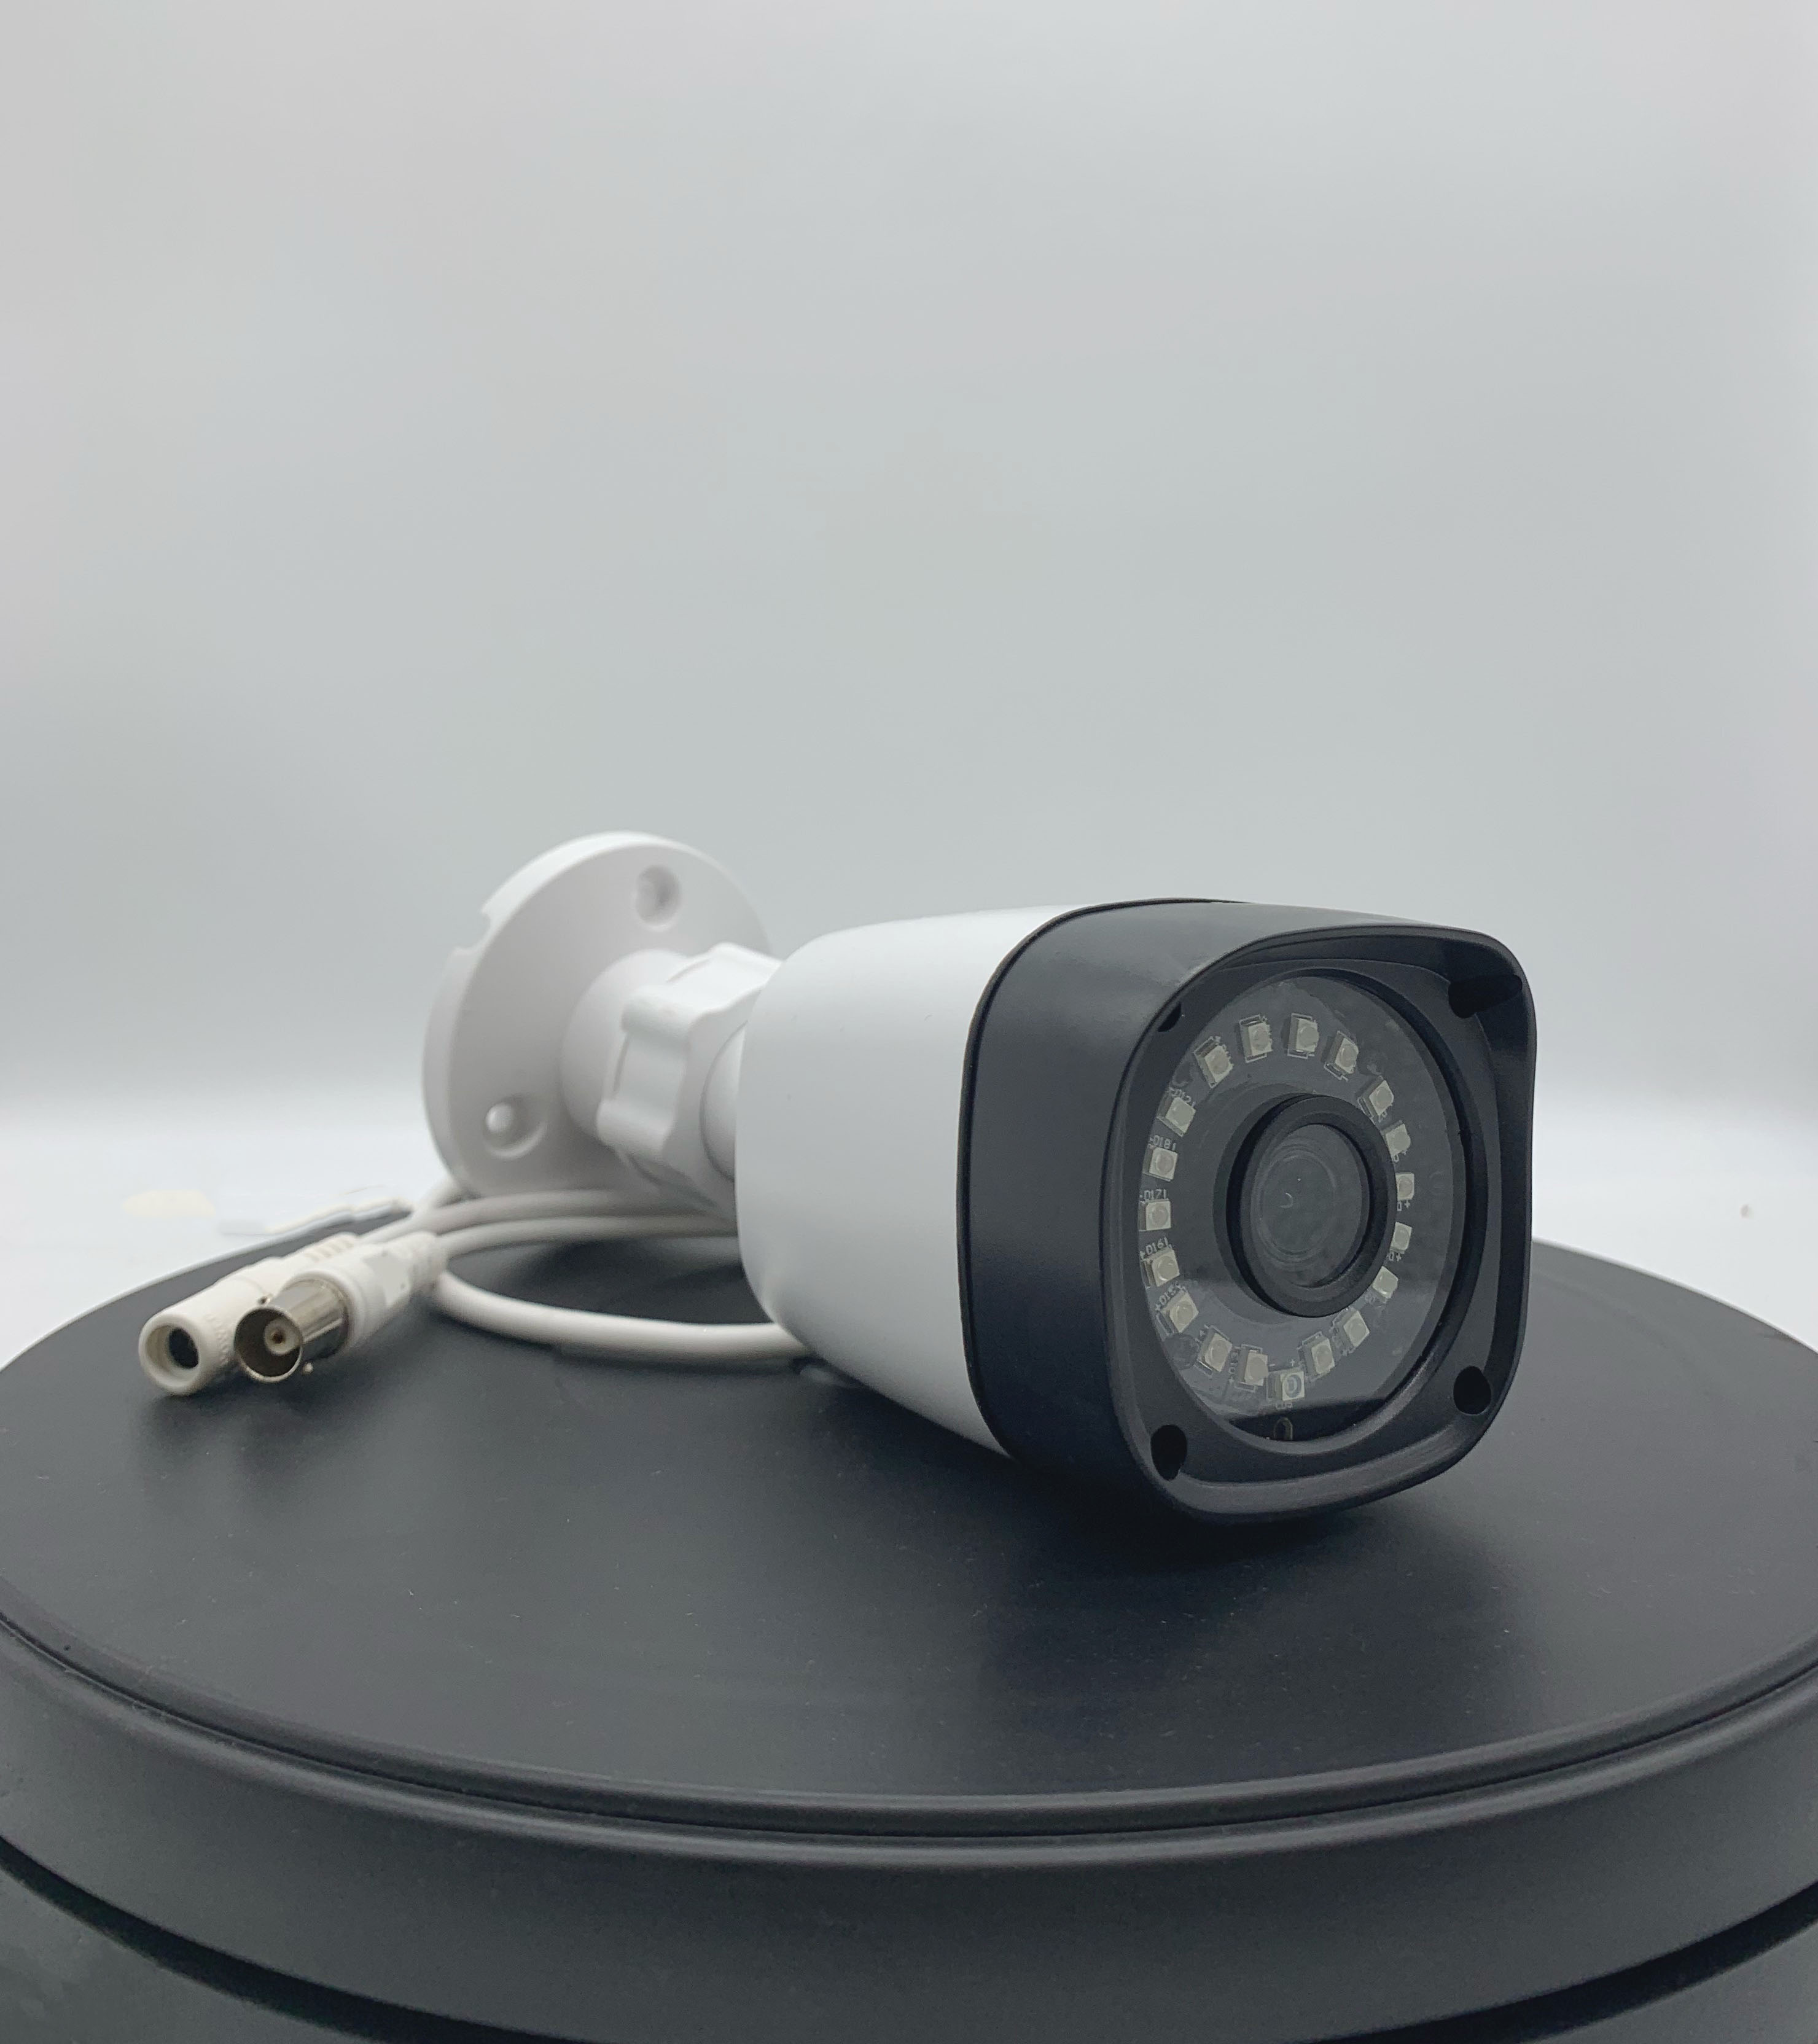 Camera Camhi AHD-2MP giá rẻ hồng ngoại quay đêm tầm xa lên đến 25m